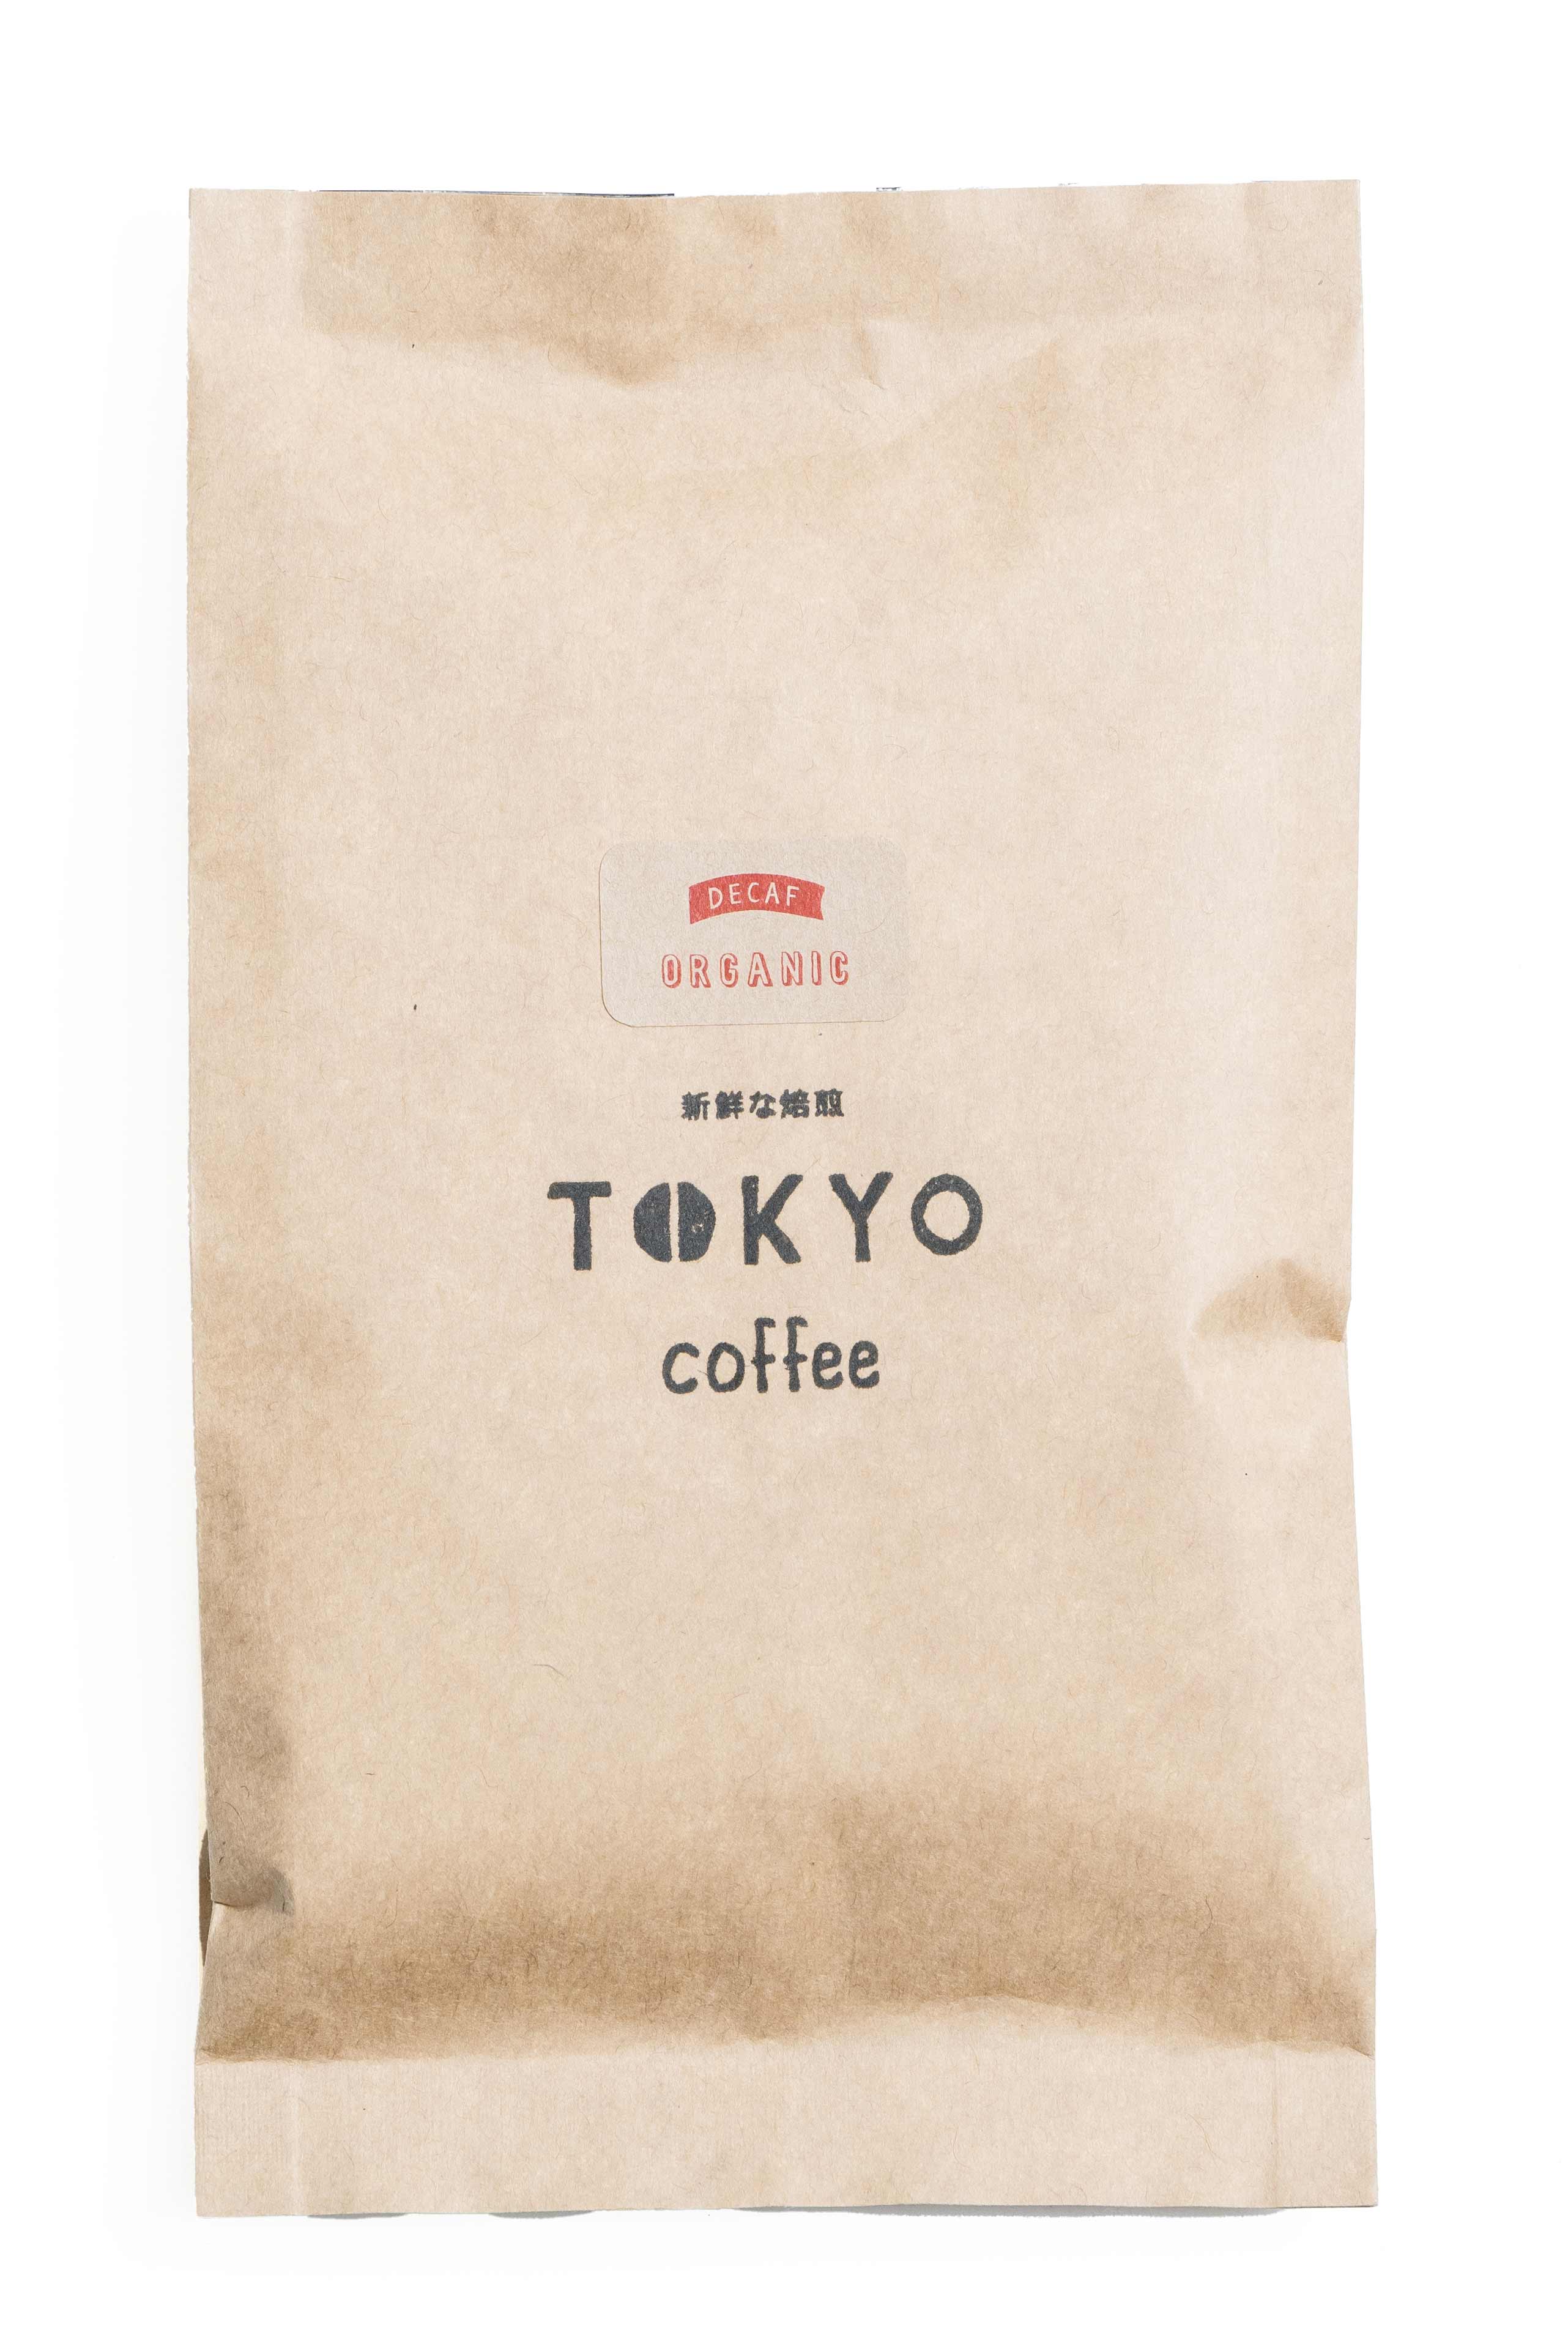 送料無料  人気 オーガニック デカフェ コーヒー豆 エチオピア モカ 人気 コーヒー Tokyo Coffee Decaf Mocha 100g